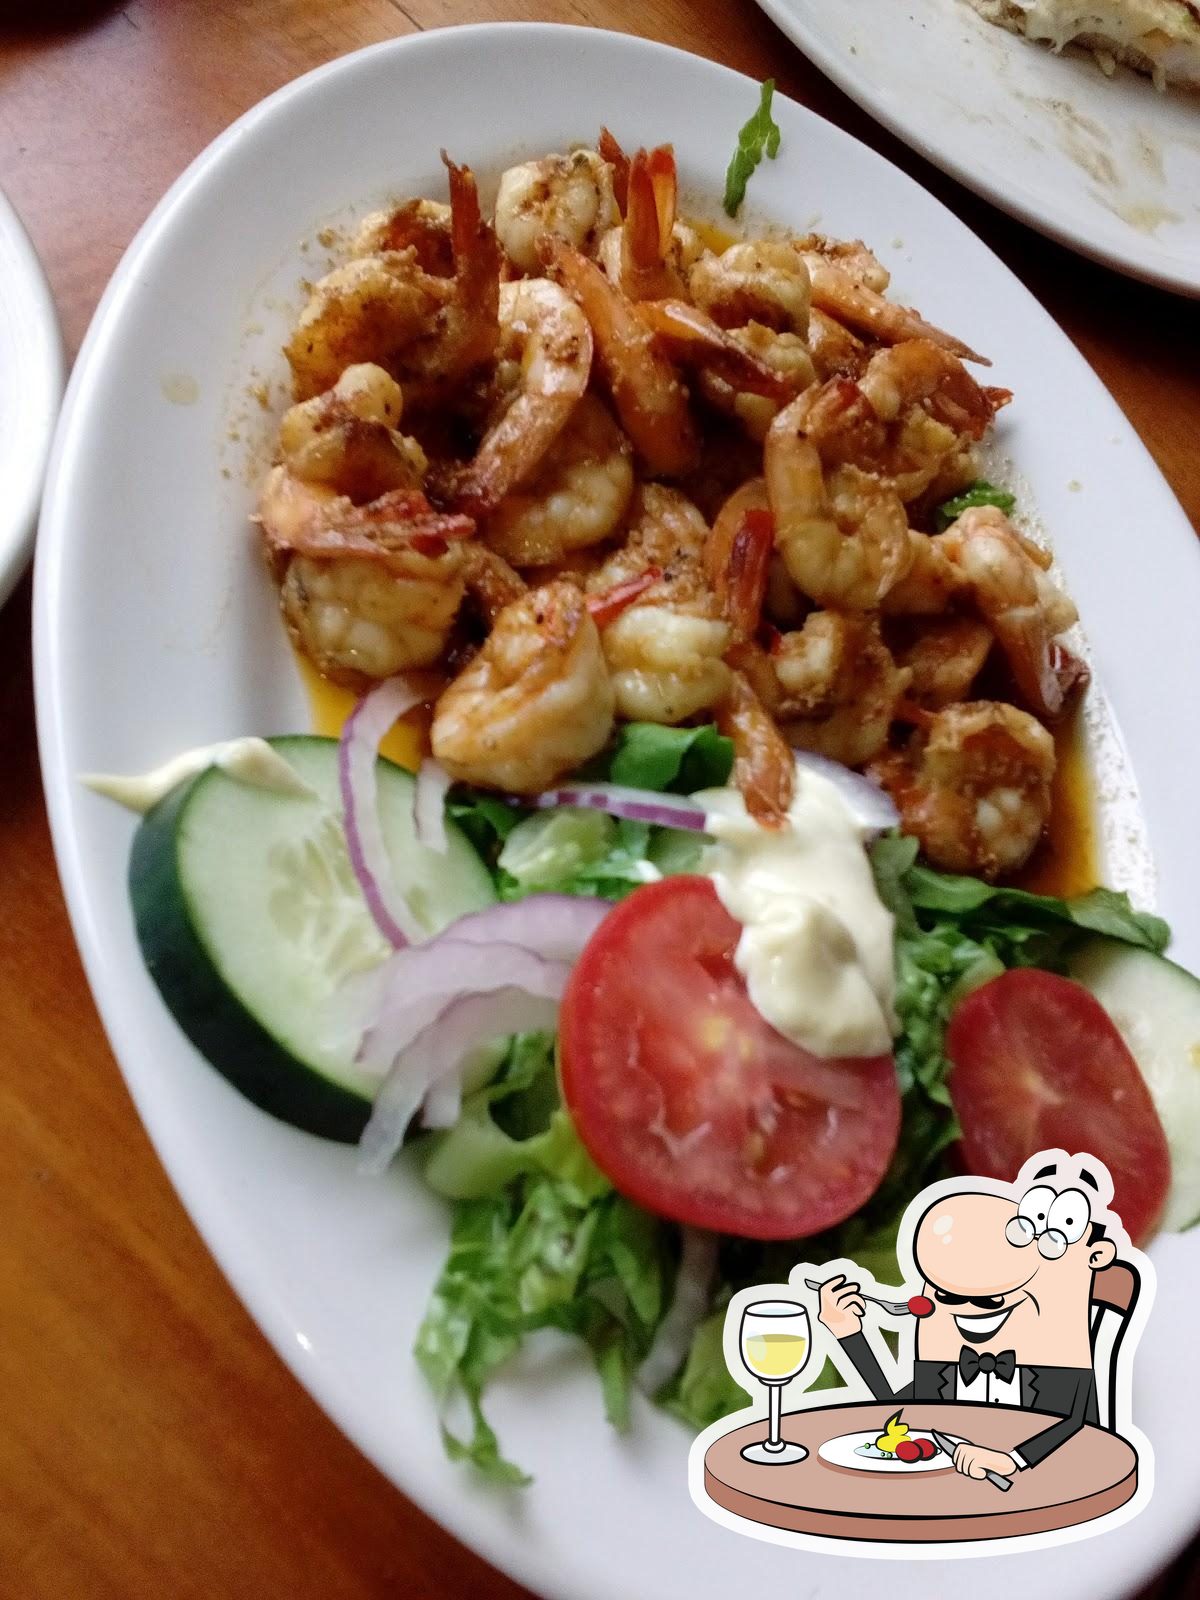 PESCADOS Y MARISCOS, Villahermosa - Seafood restaurant menu and reviews